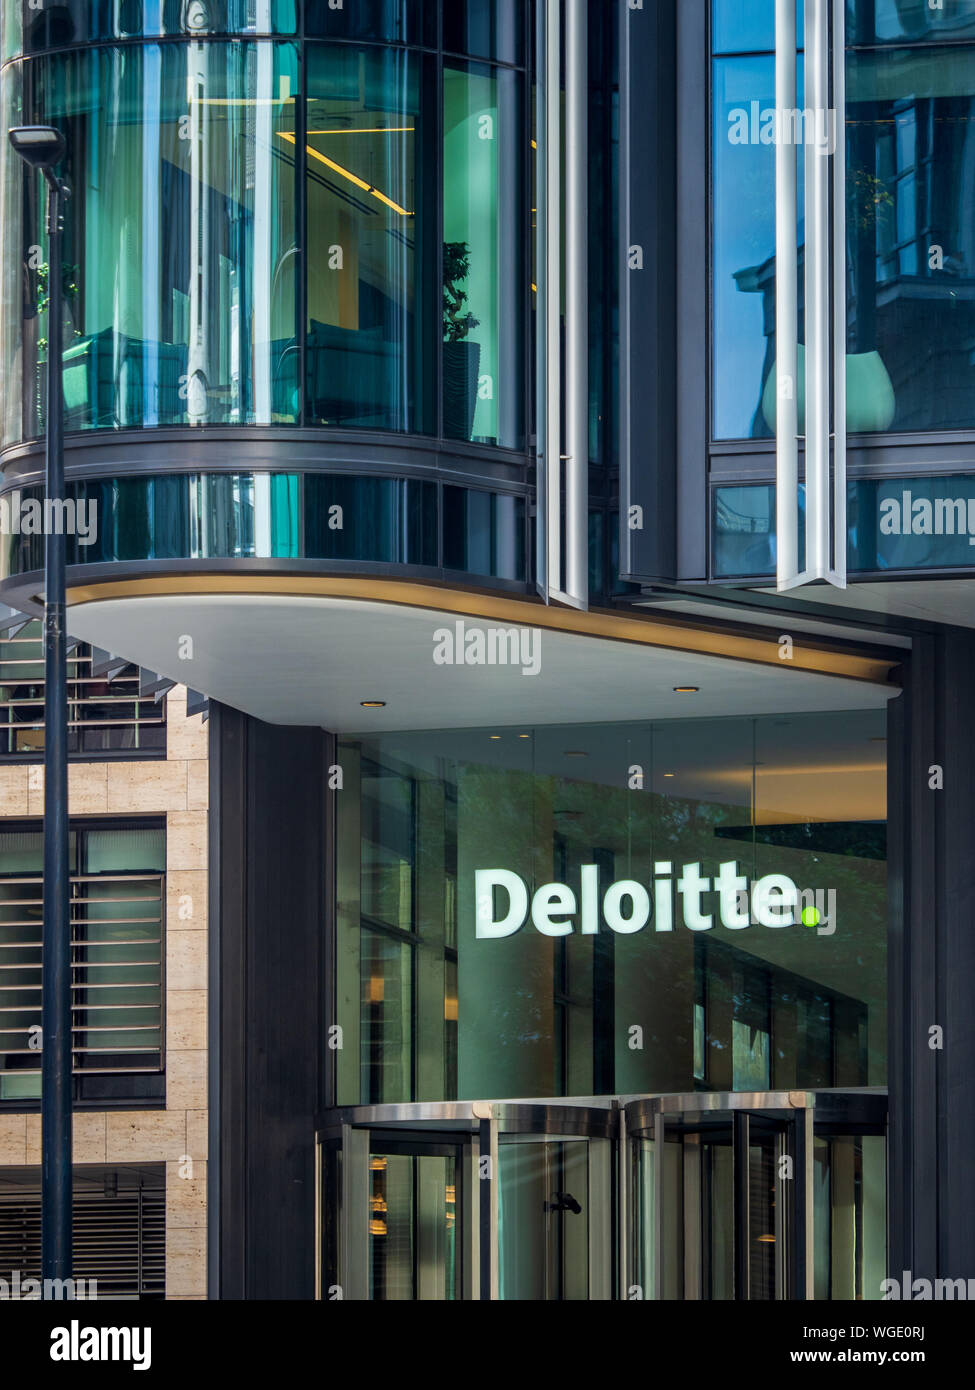 Sede de Deloitte en Londres. La sede central de Deloitte en el Reino Unido y el noroeste de Europa está en 1 New Street Square, en el centro de Londres Foto de stock